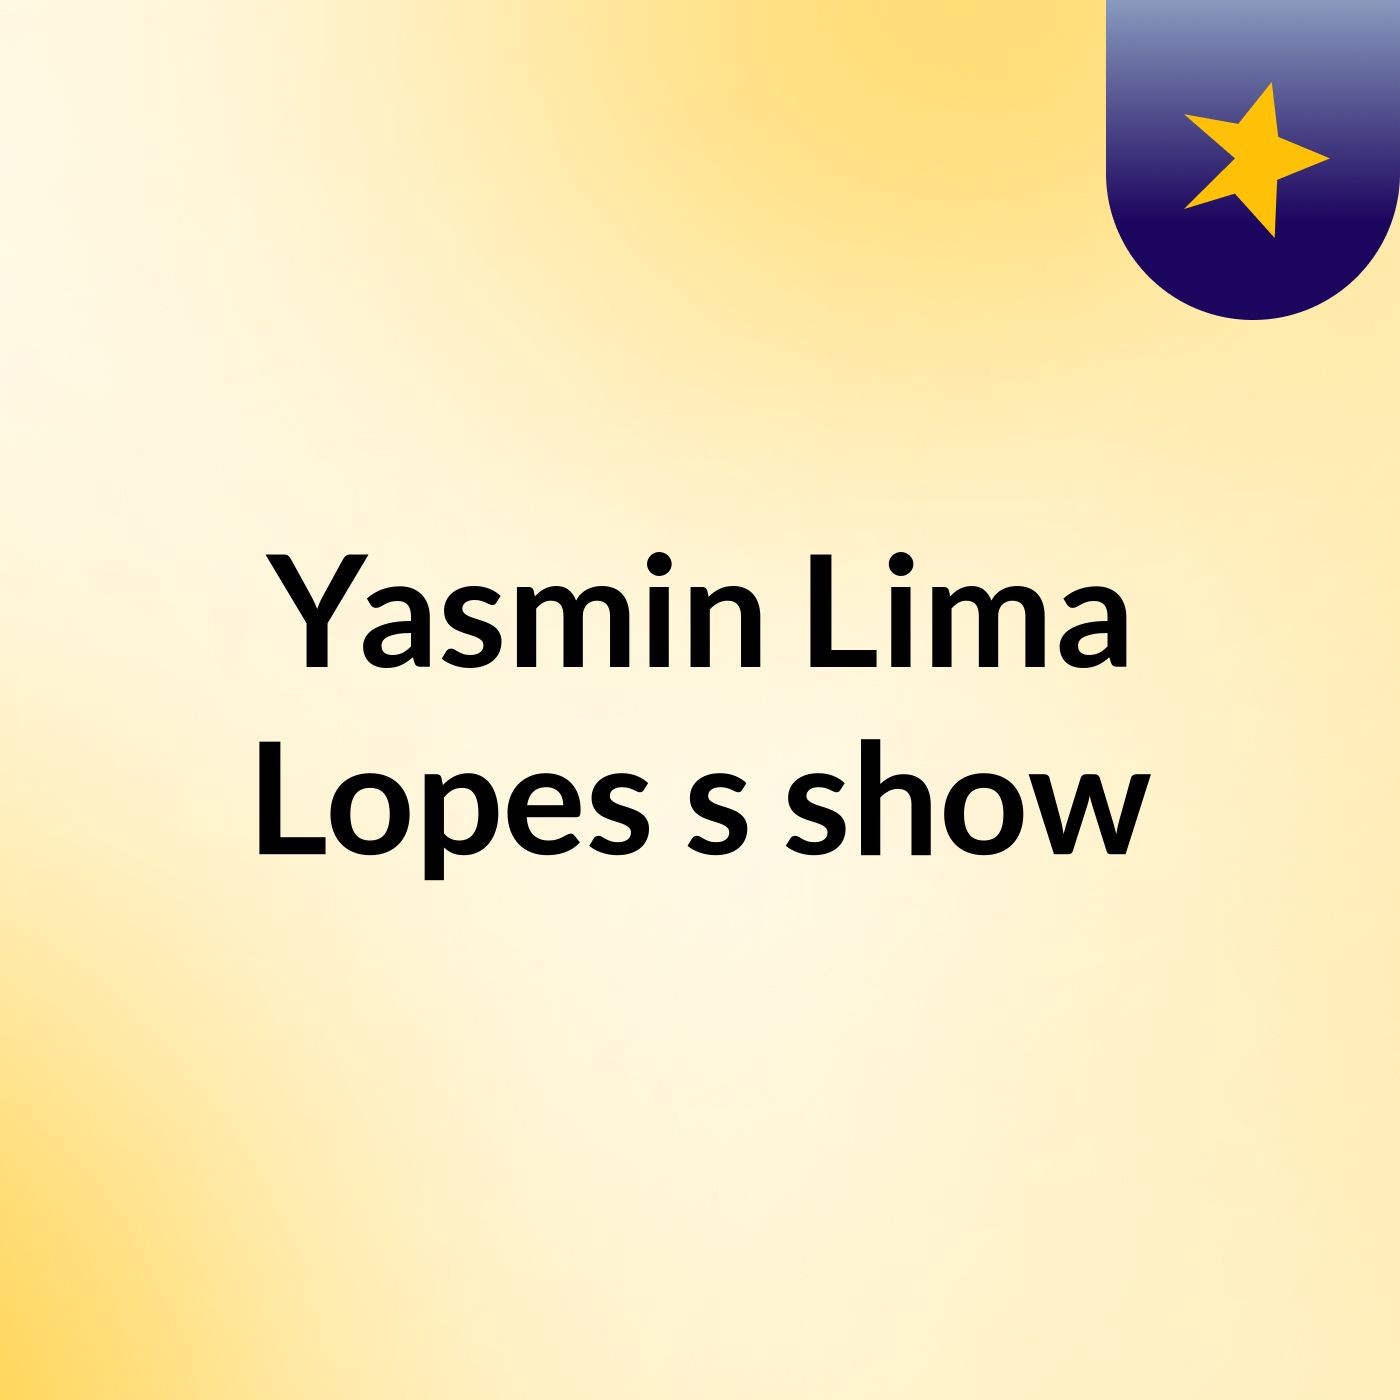 Yasmin Lima Lopes's show